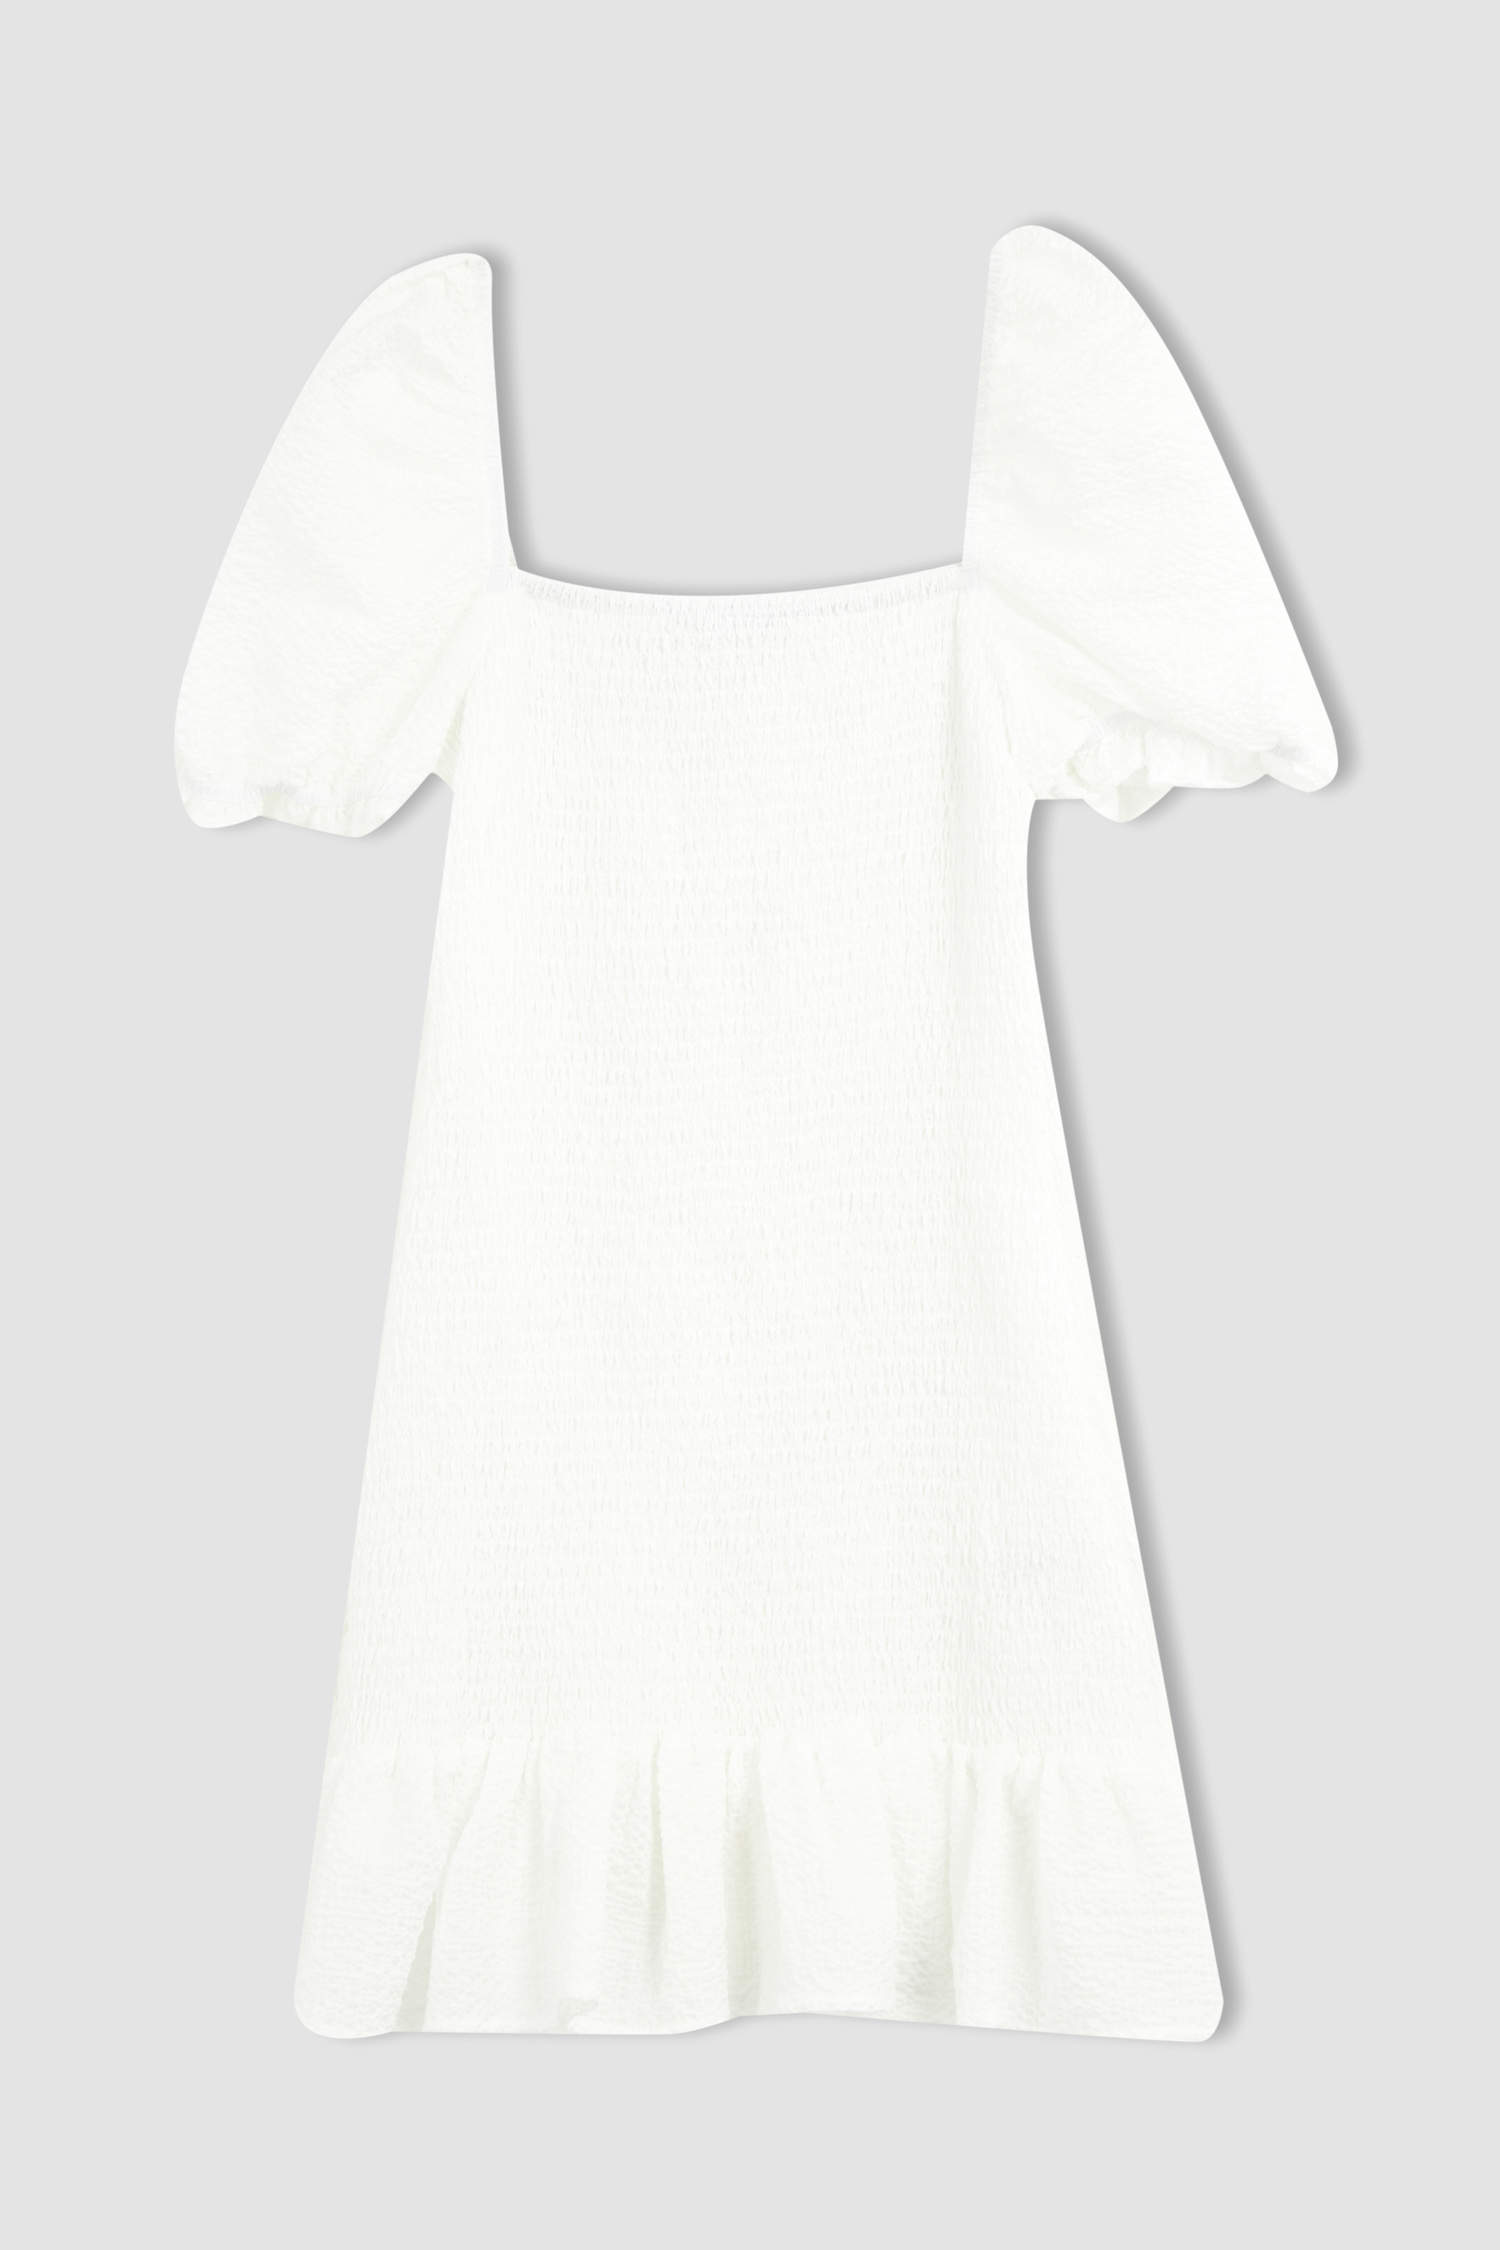 White WOMAN Square Neck Short Sleeve Mini Dress 3632106 | DeFacto